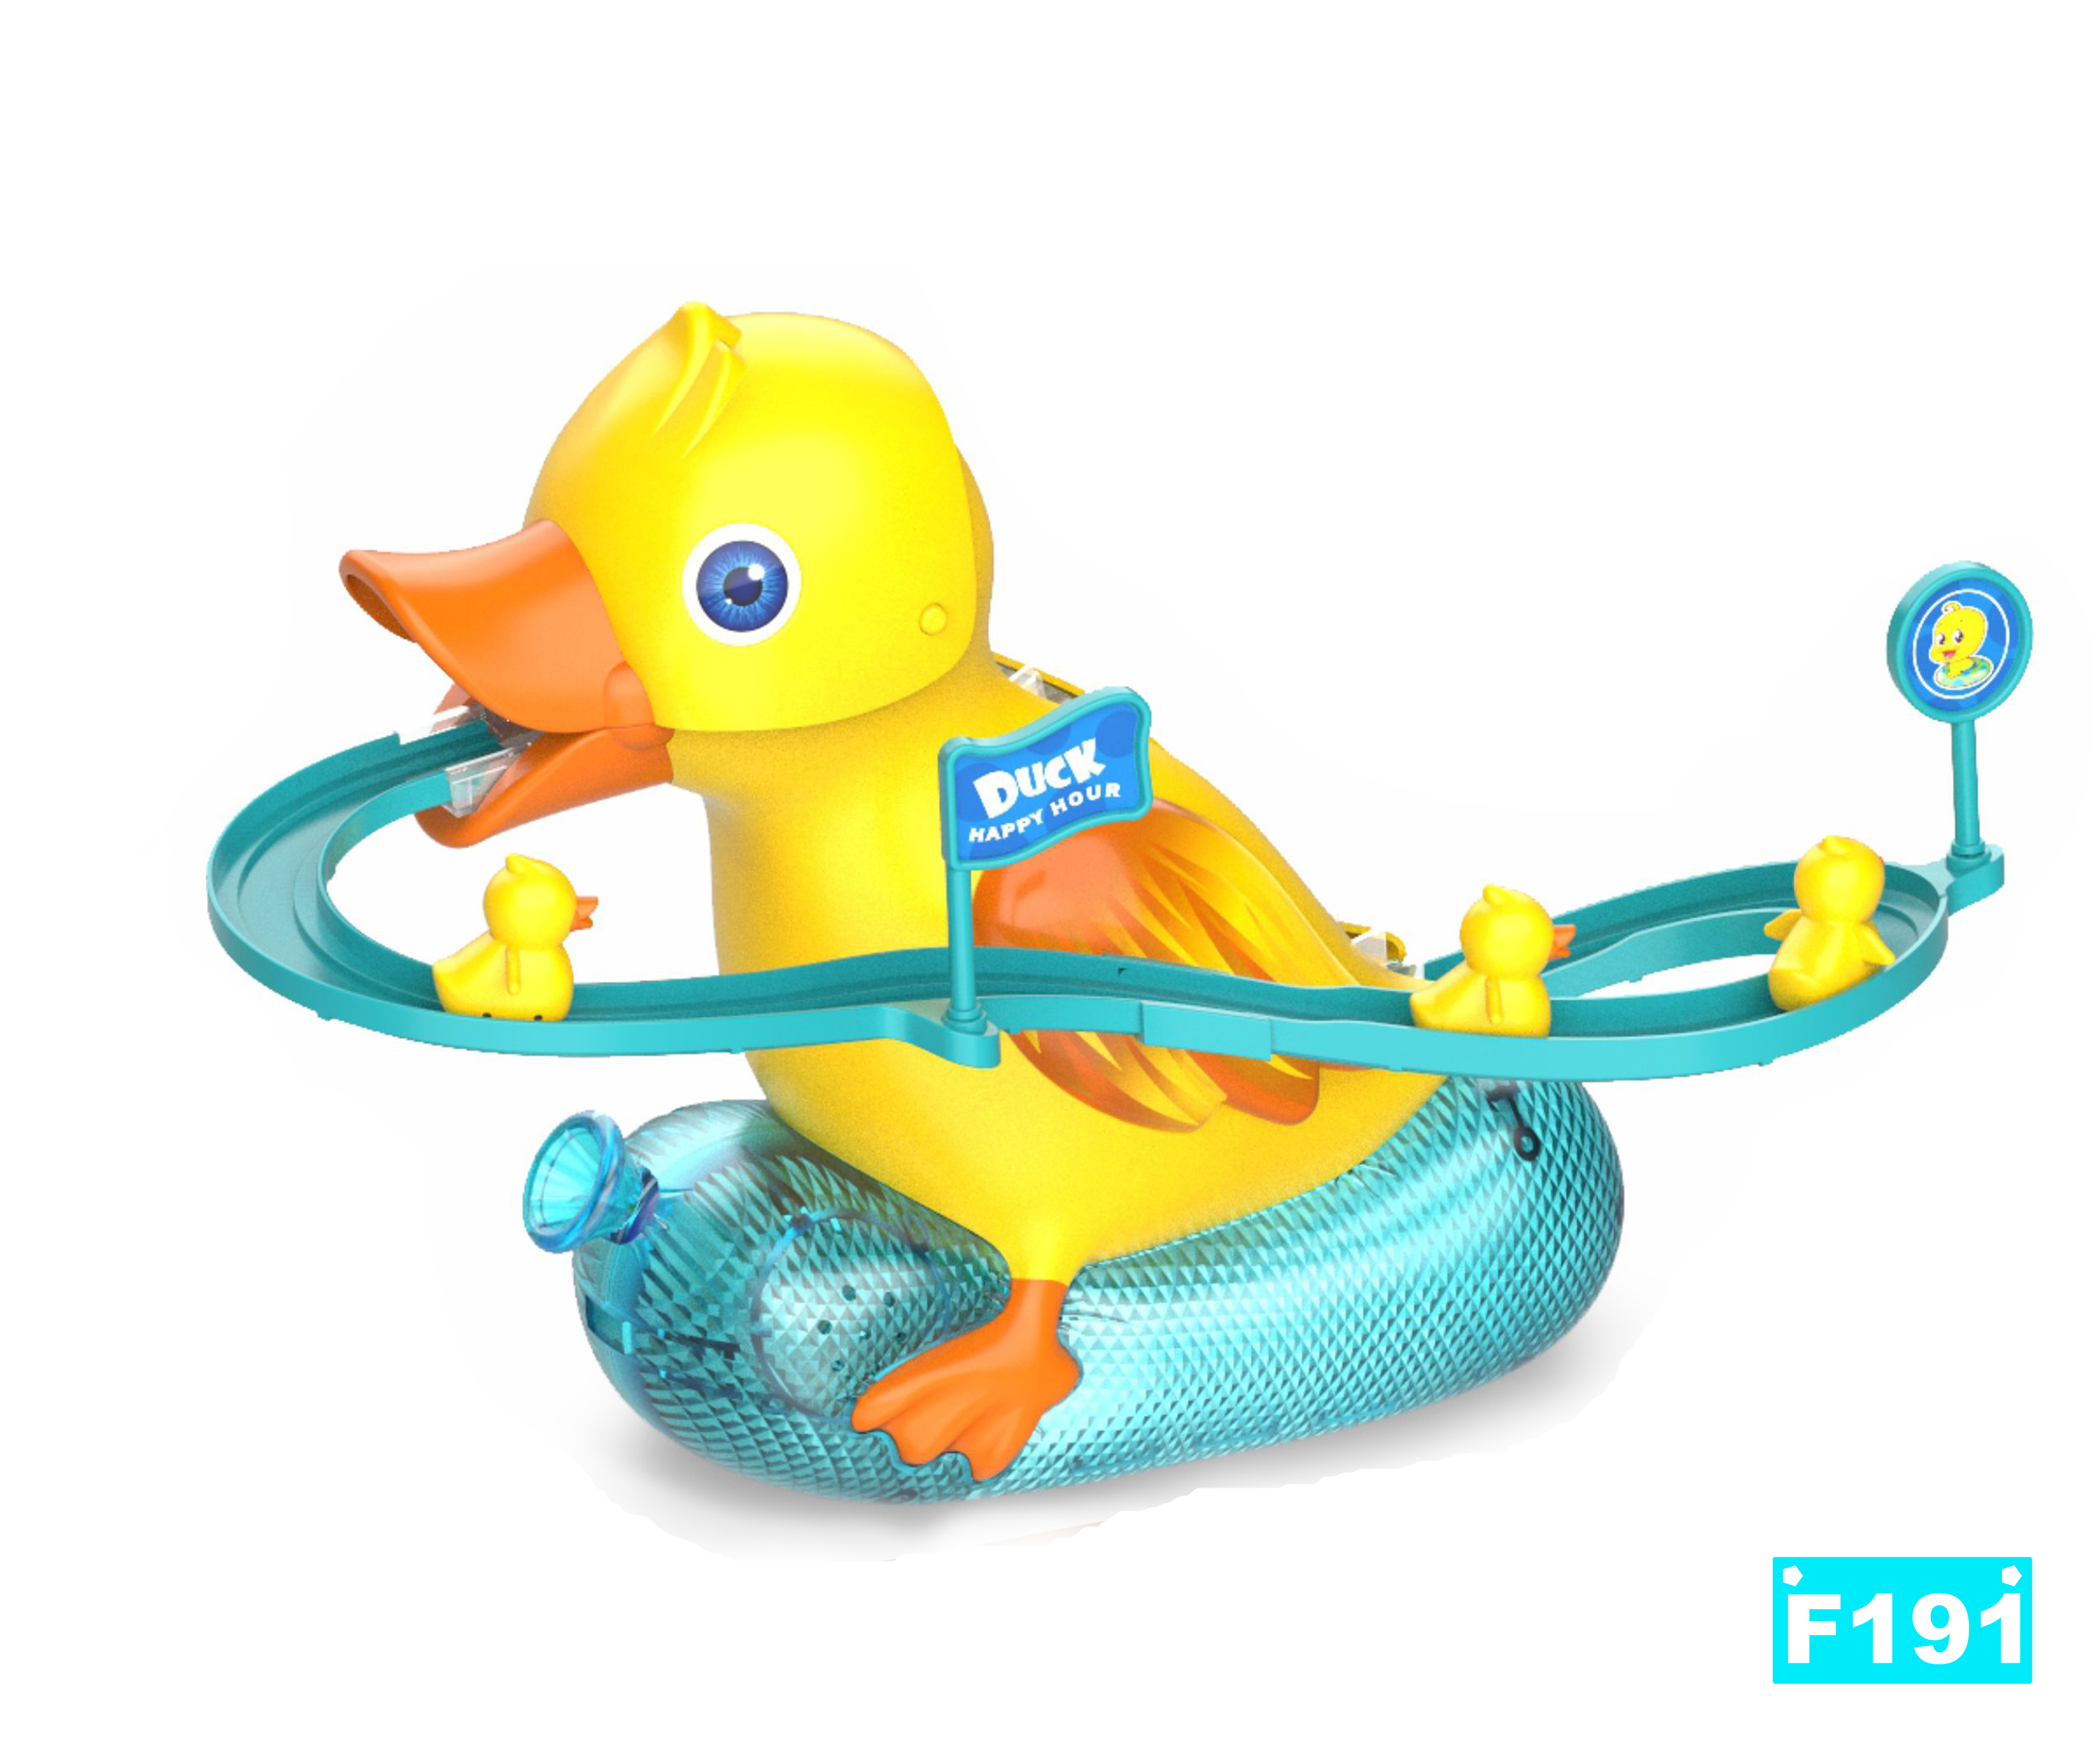 小鸭子爬楼梯 鸭子滑梯轨道玩具 外贸玩具 电动玩具 智能玩具 TOYS 小黄鸭玩具 JUGUETE